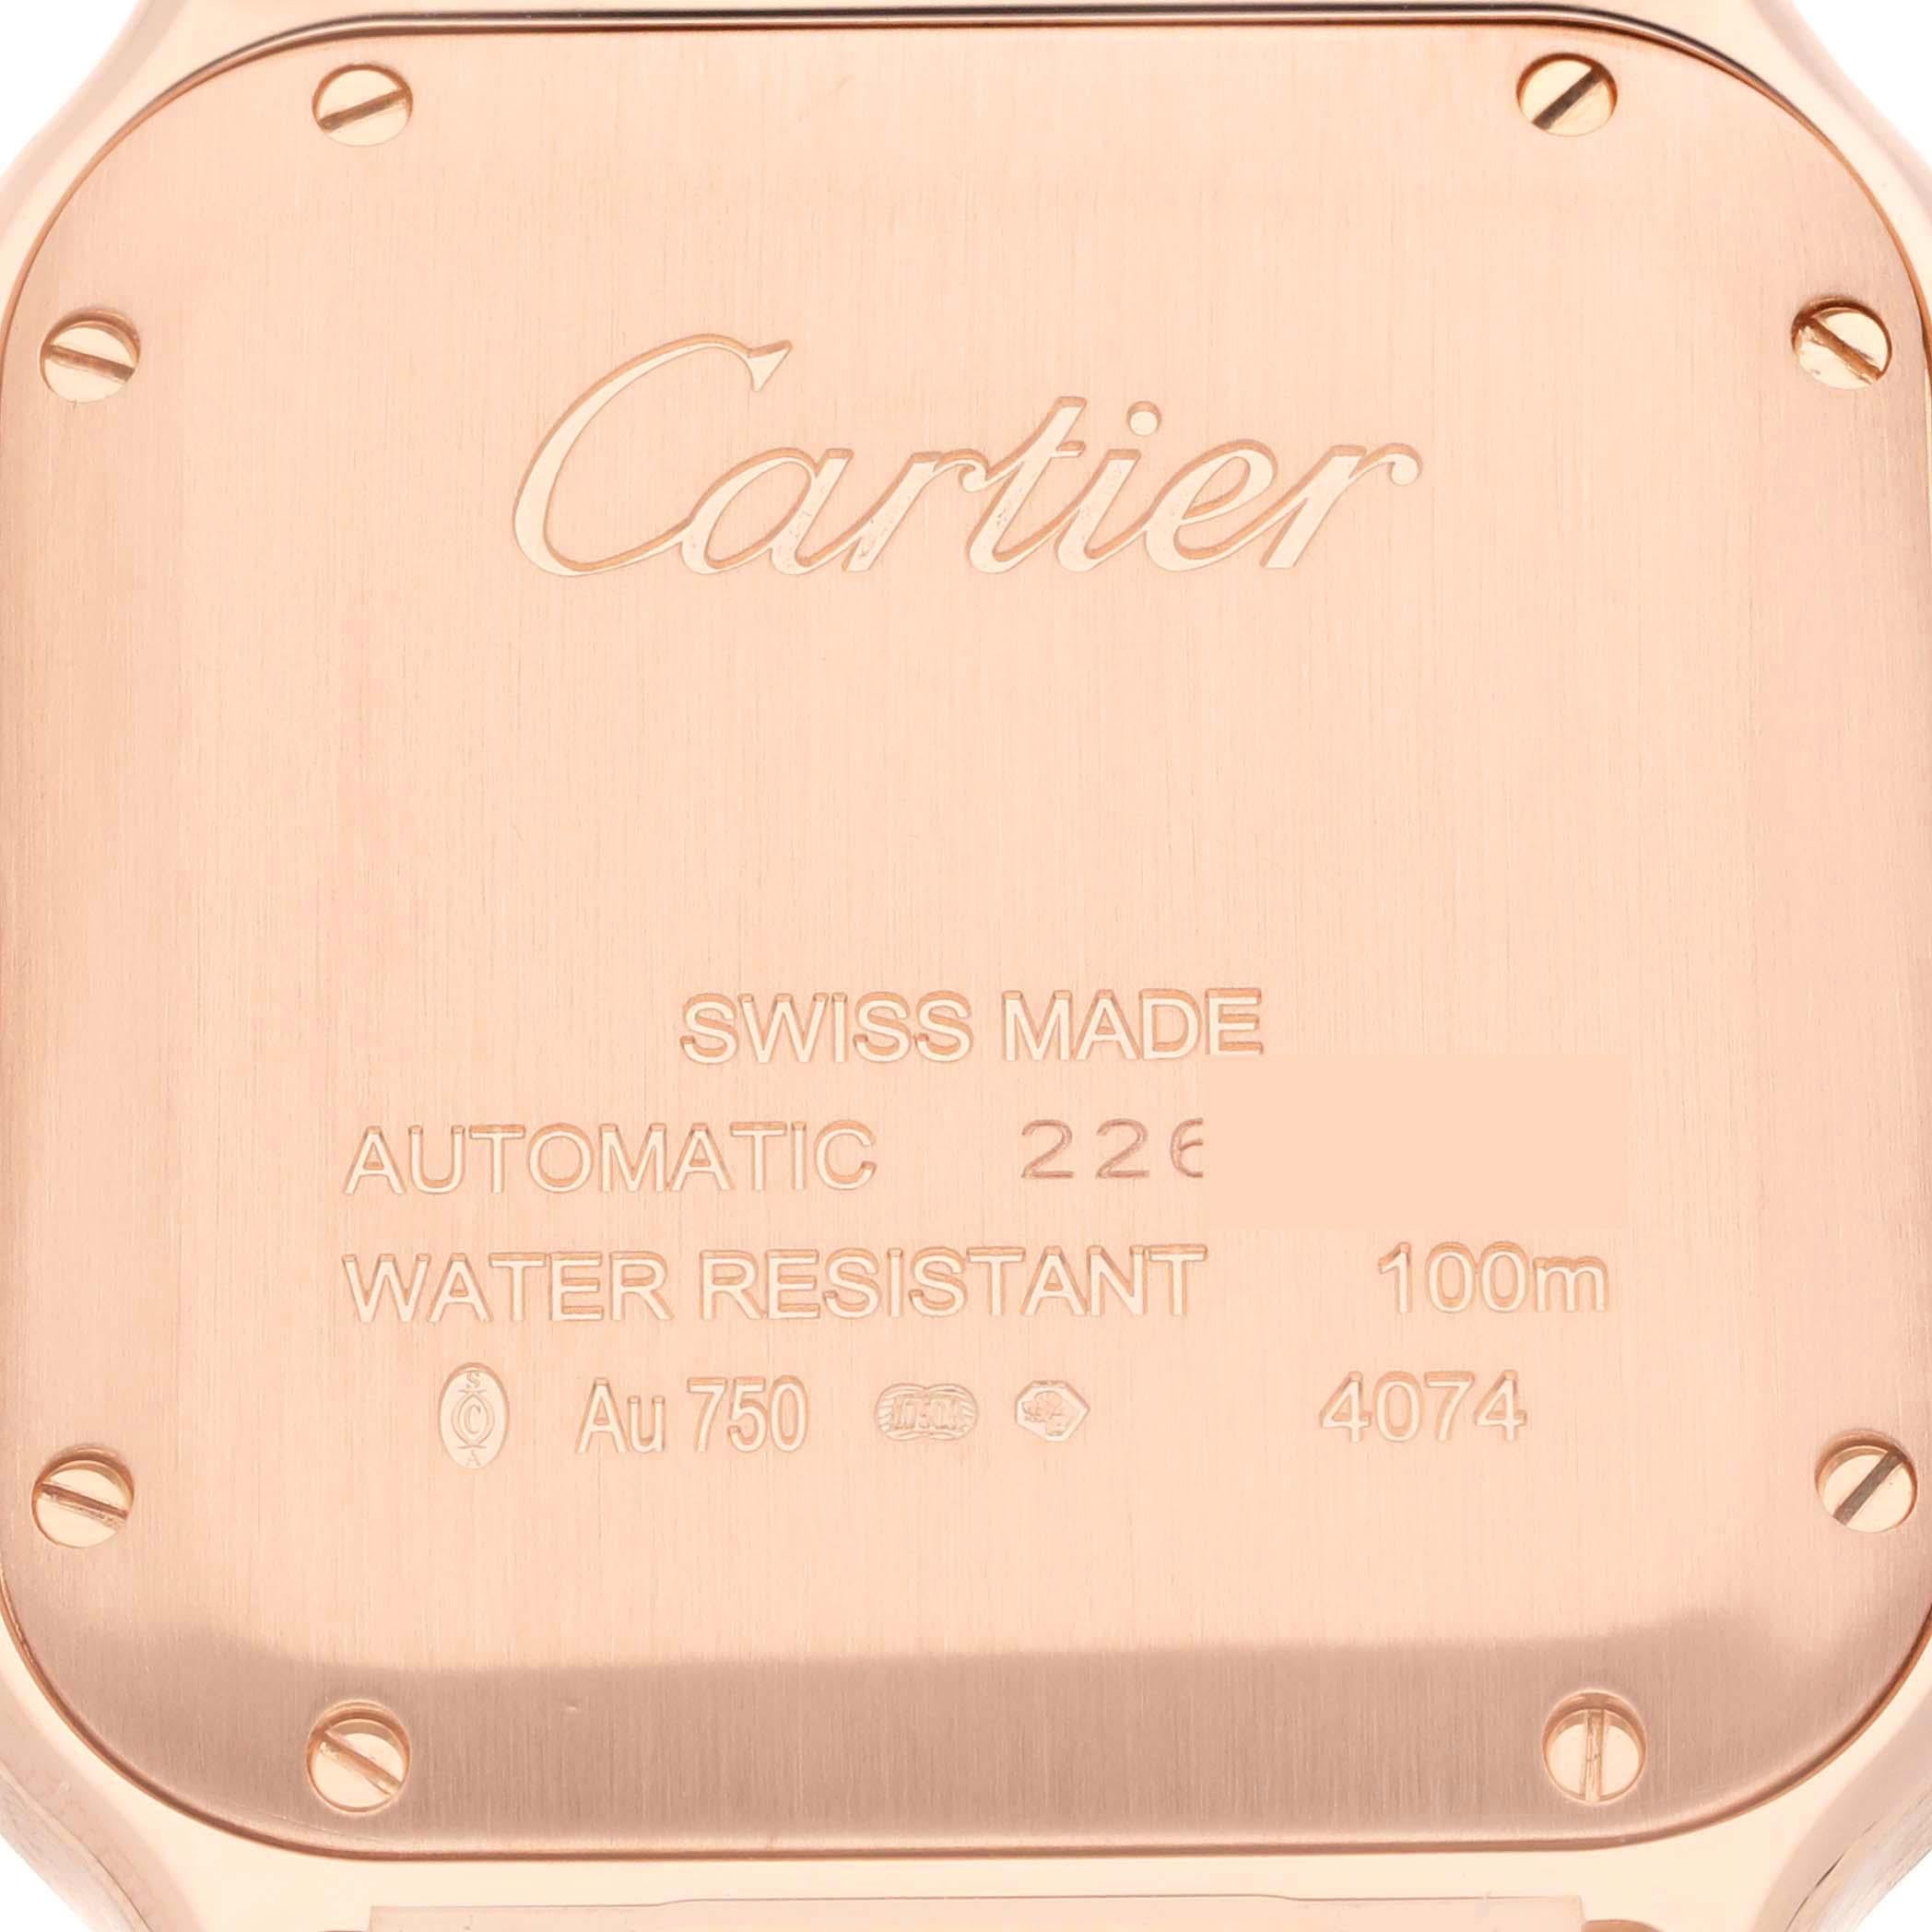 Cartier Santos Midsize Rose Gold Mens Watch WGSA0012 Box Card. Mouvement à remontage automatique calibre 1847 MC. Boîtier en or rose 18 carats de 35,1 x 35,1 mm. Couronne octogonale protégée, sertie d'un saphir bleu facetté. Lunette en or rose 18